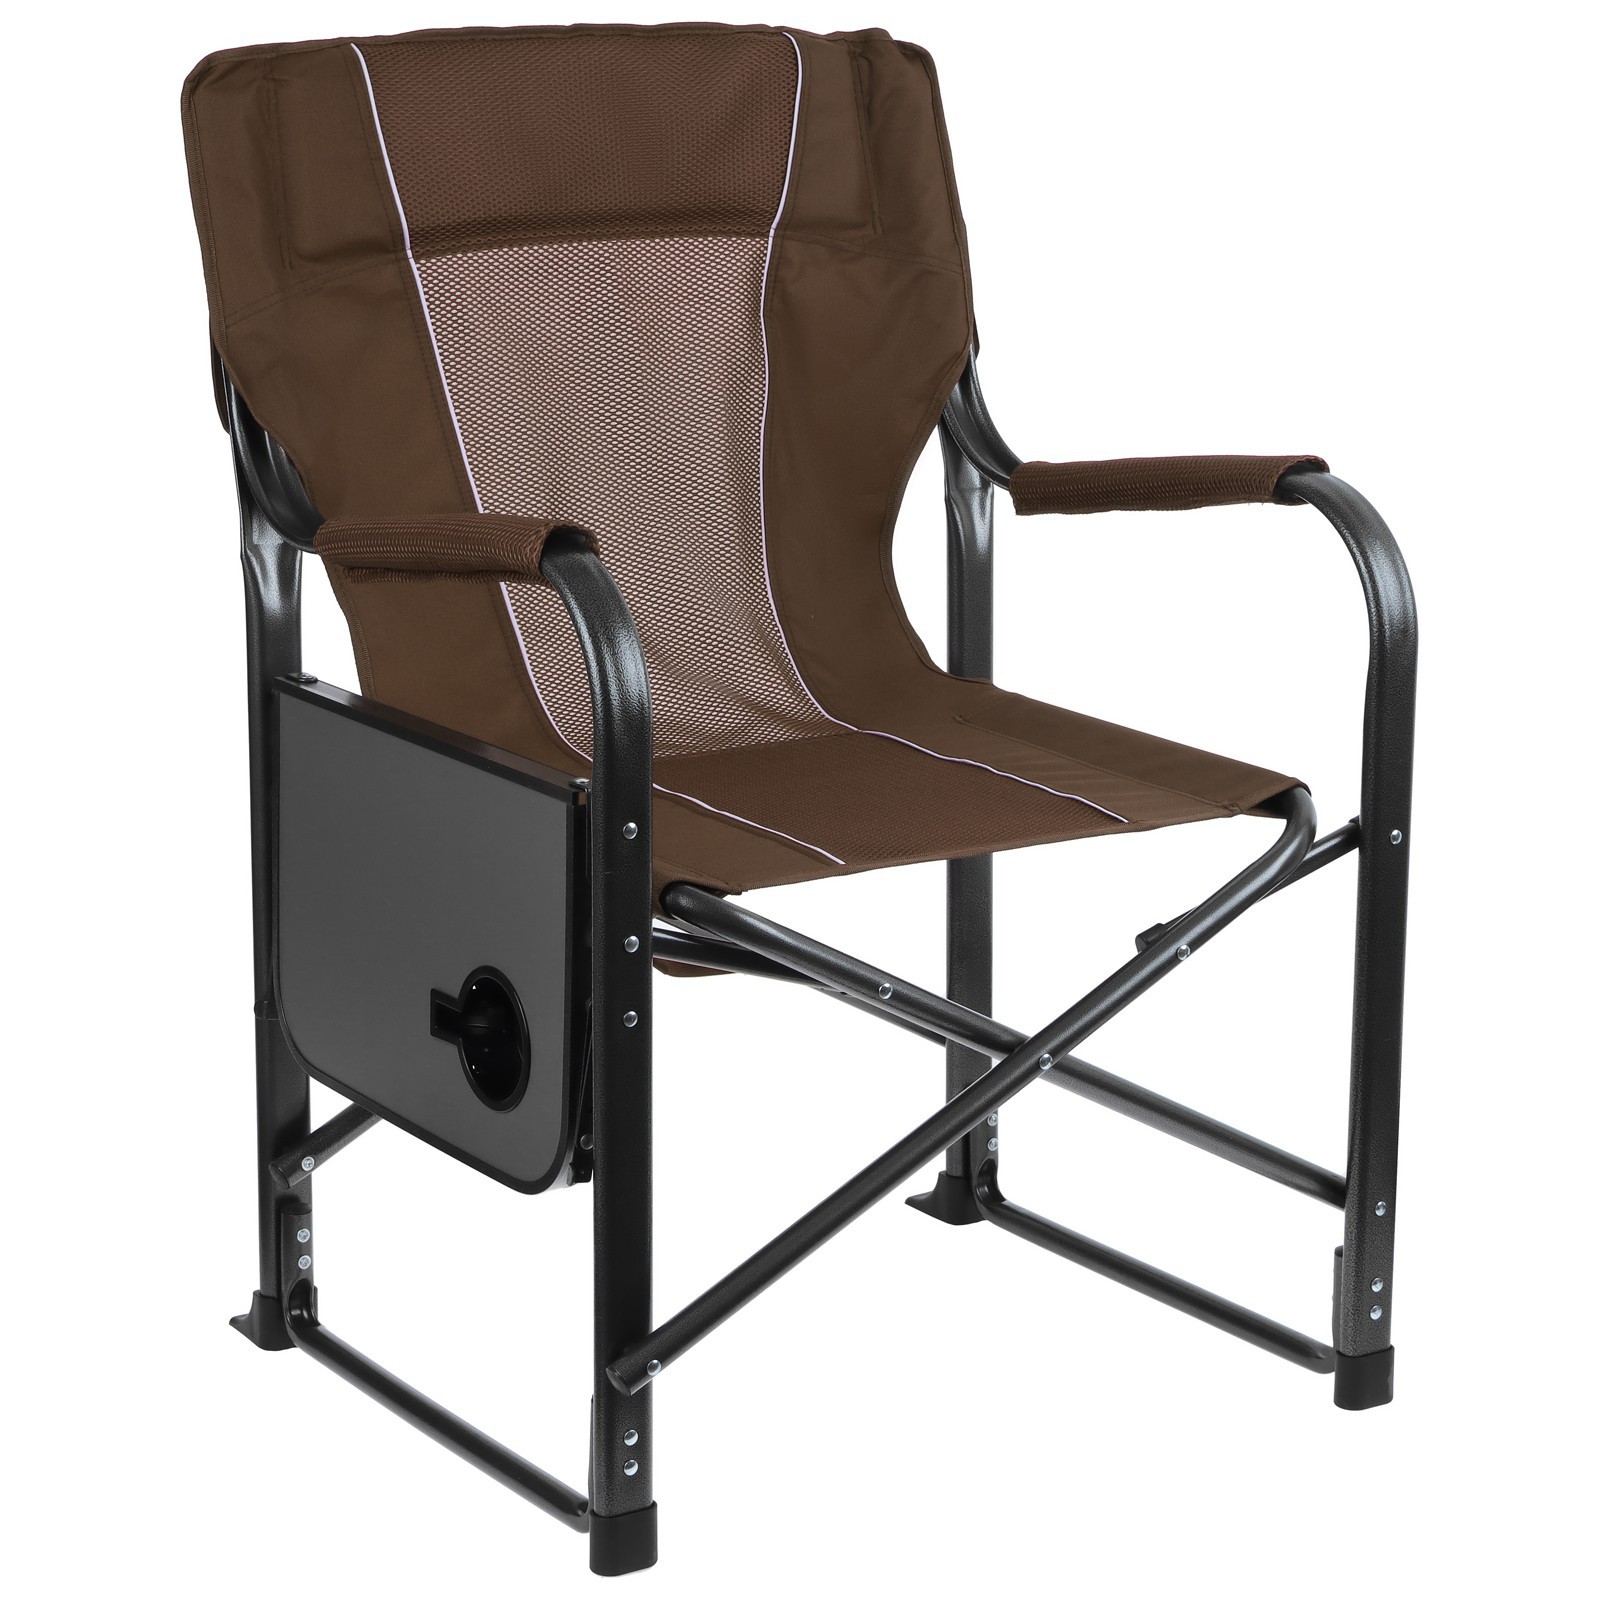 Кресло Maclay туристическое стол с подстаканником р. 63 х 47 х 94 см цвет коричневый - фото 5